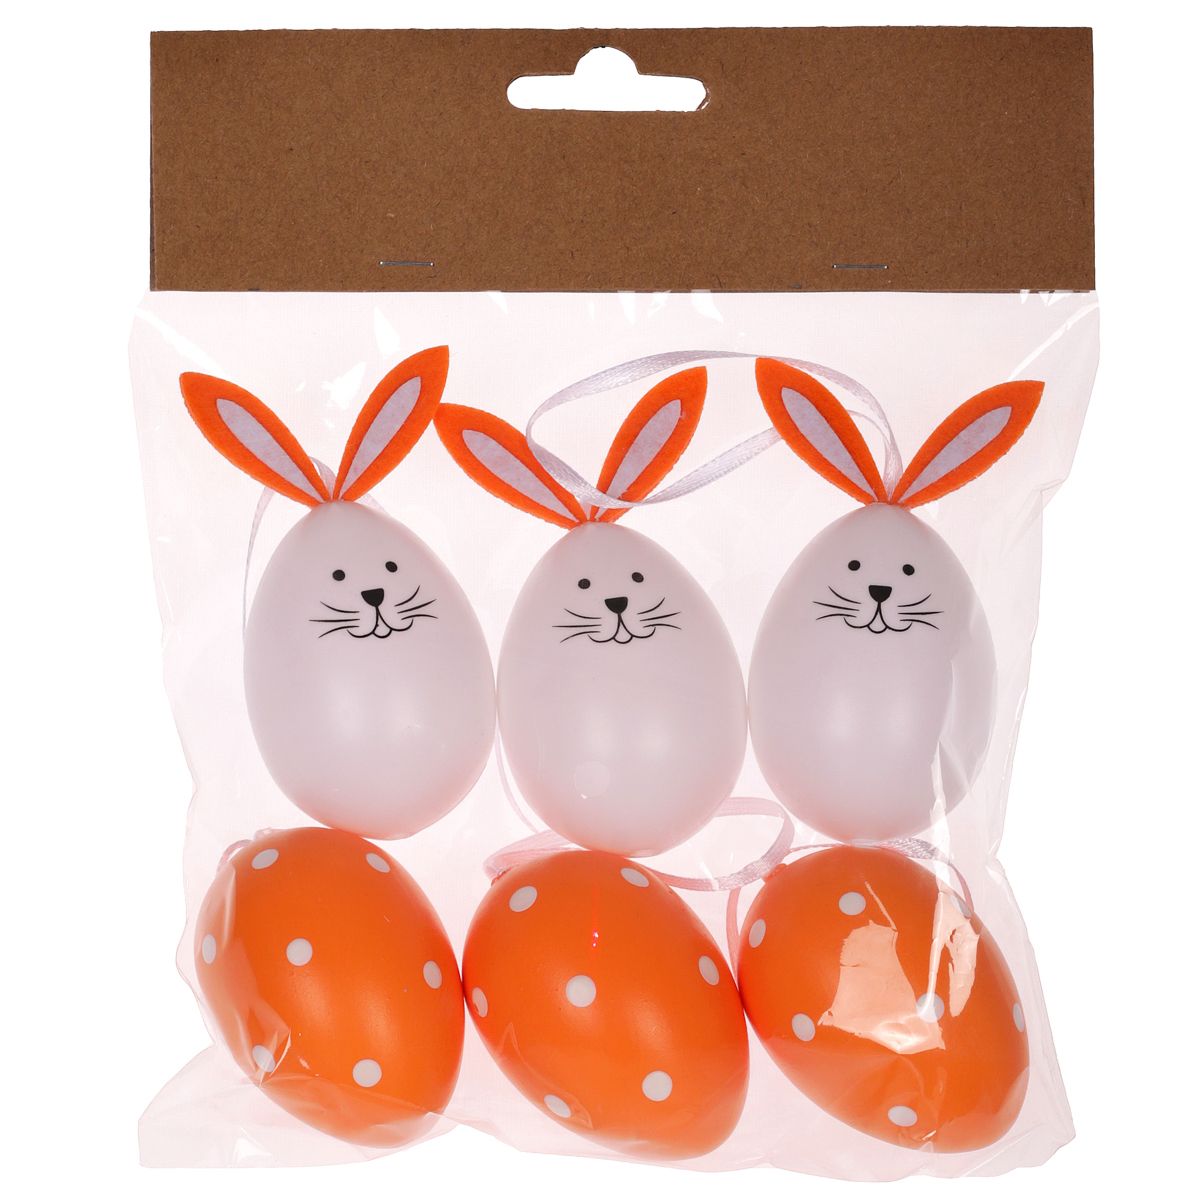 Velikonoční plastová vajíčka na zavěšení Zajíček 6cm - 6ks - Oranžové